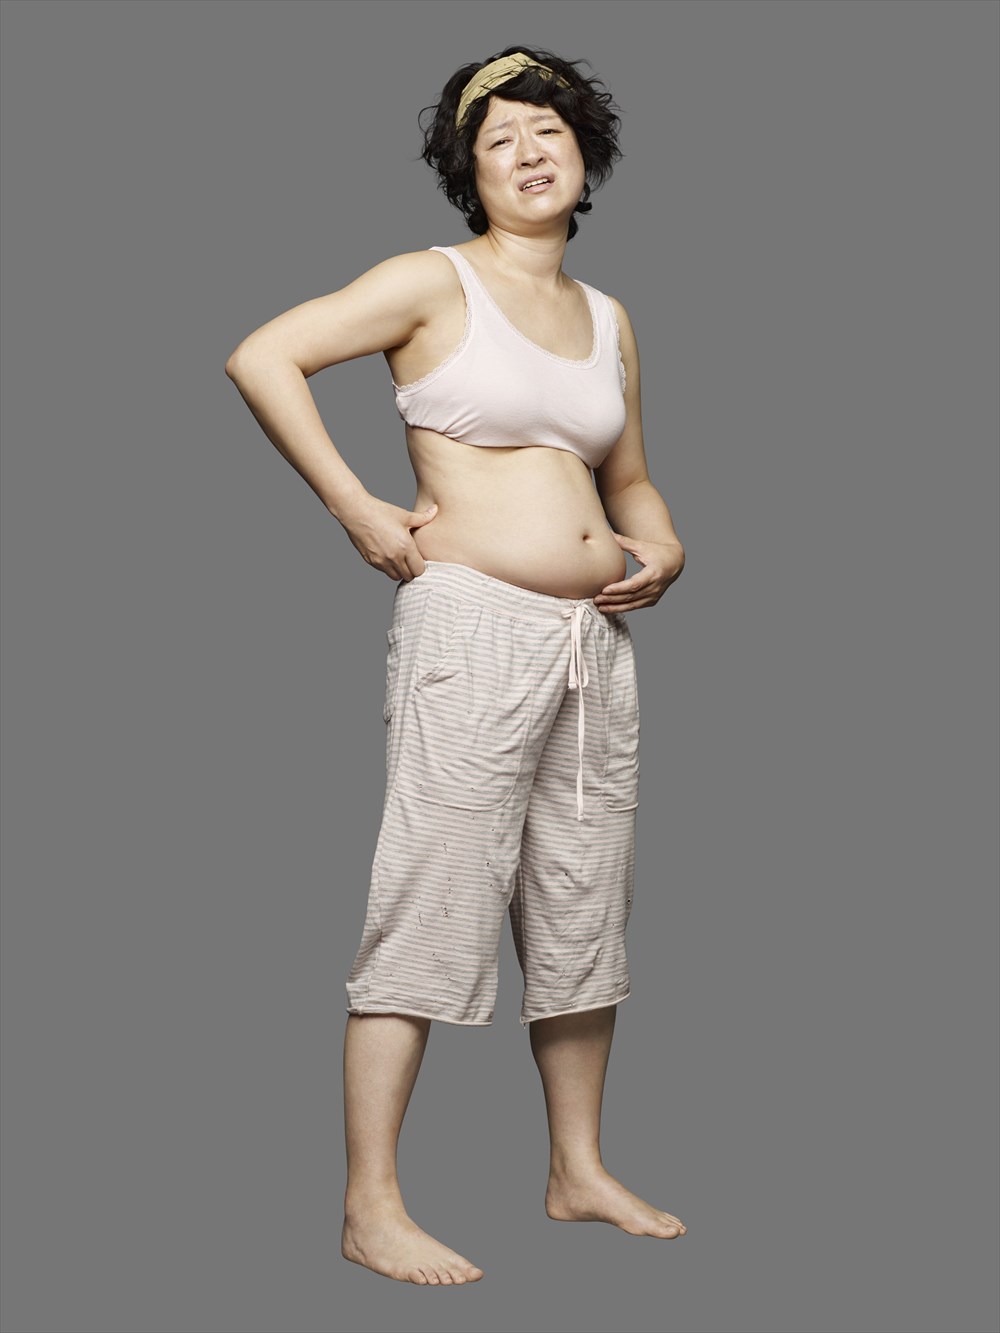 何も食べなかったら痩せるのは当たり前 14 7キロ減量のしゅはまはるみが思う 女性にとっていいからだ ねとらぼ